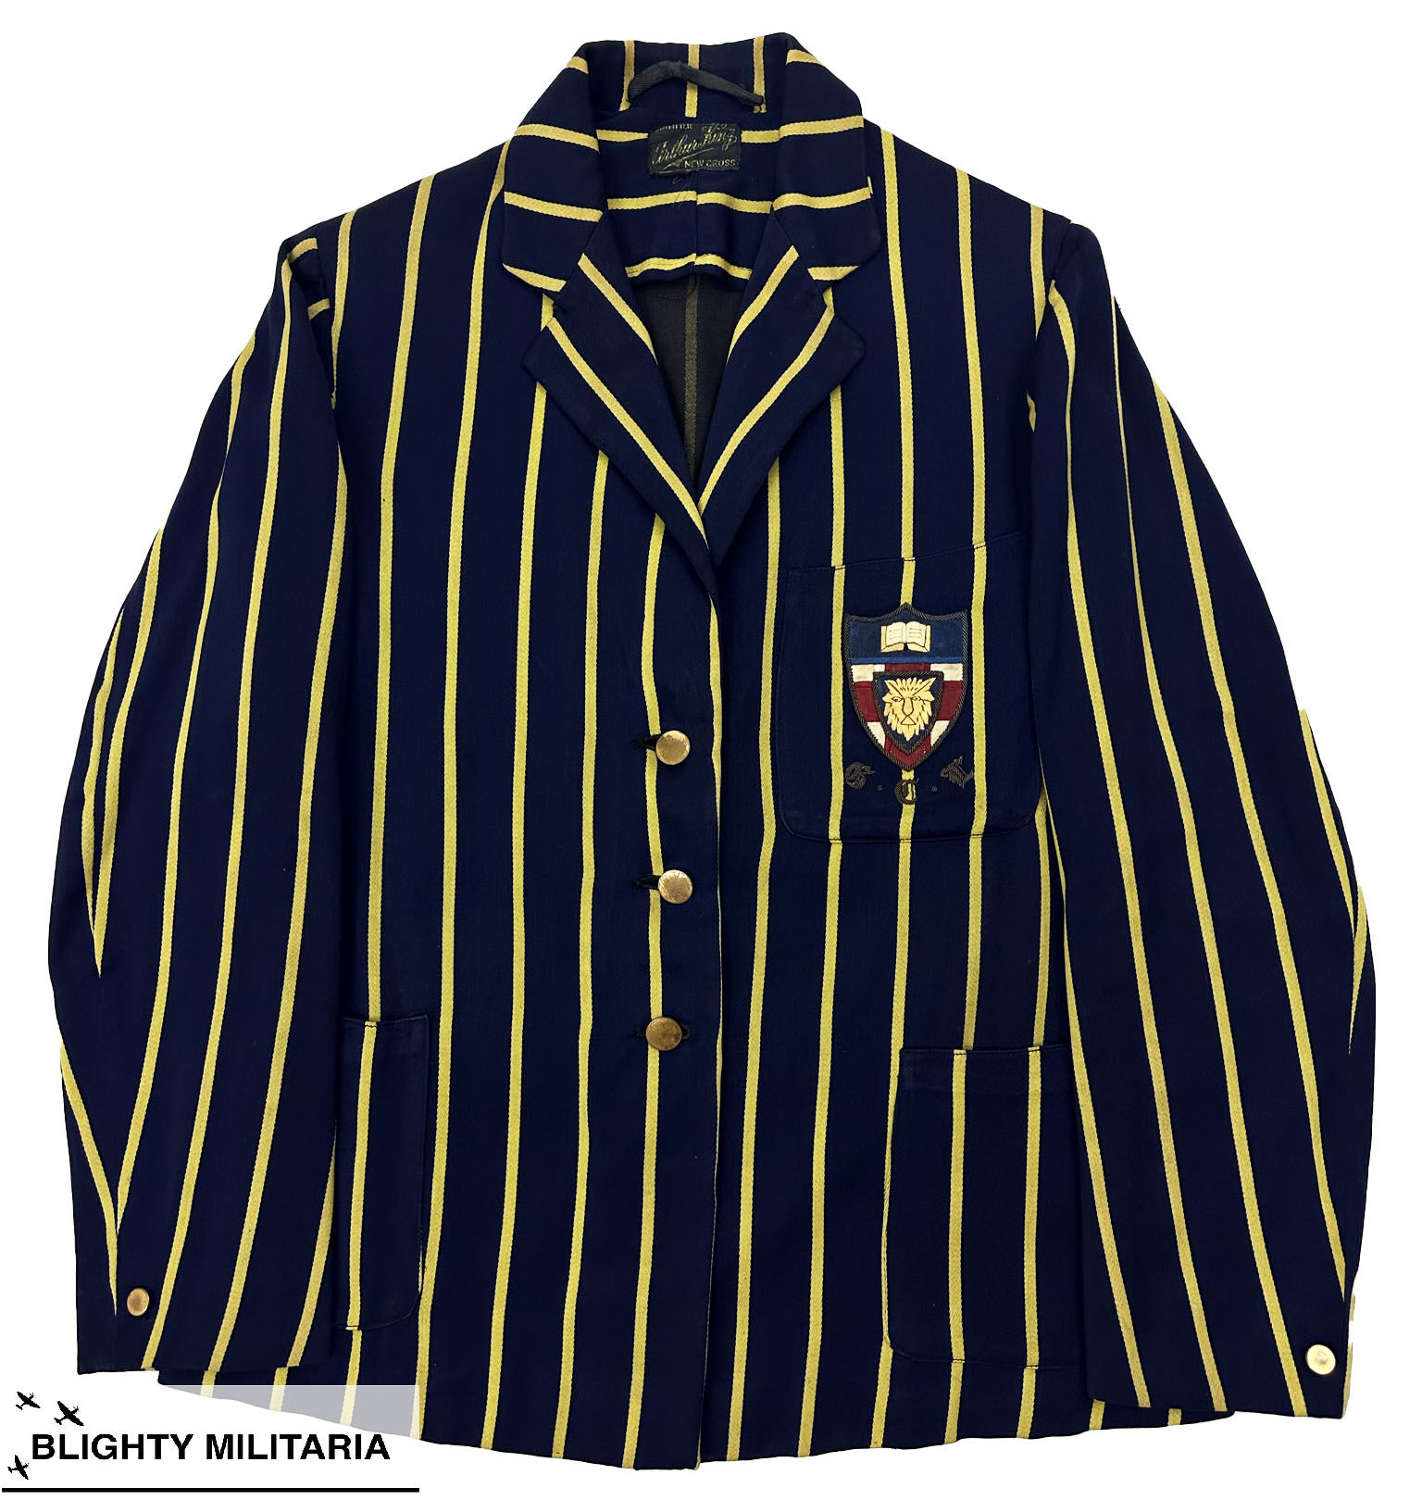 Original 1940s Women's Goldsmiths' College Striped Sports Blazer